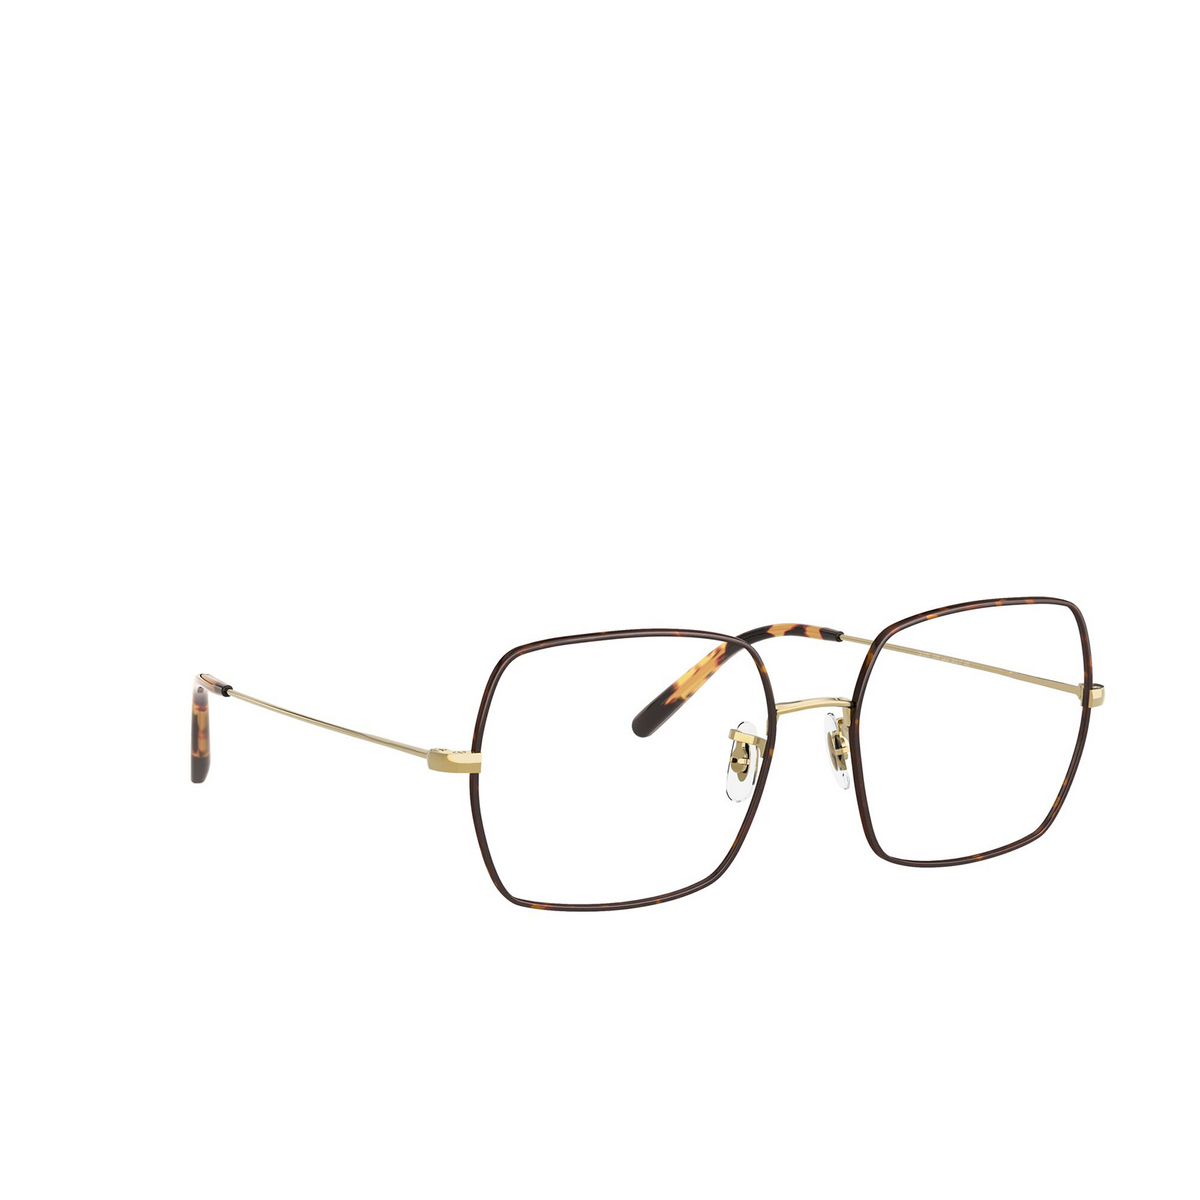 Oliver Peoples® Irregular Eyeglasses: Justyna OV1279 color Gold / Tortoise 5295 - 2/3.